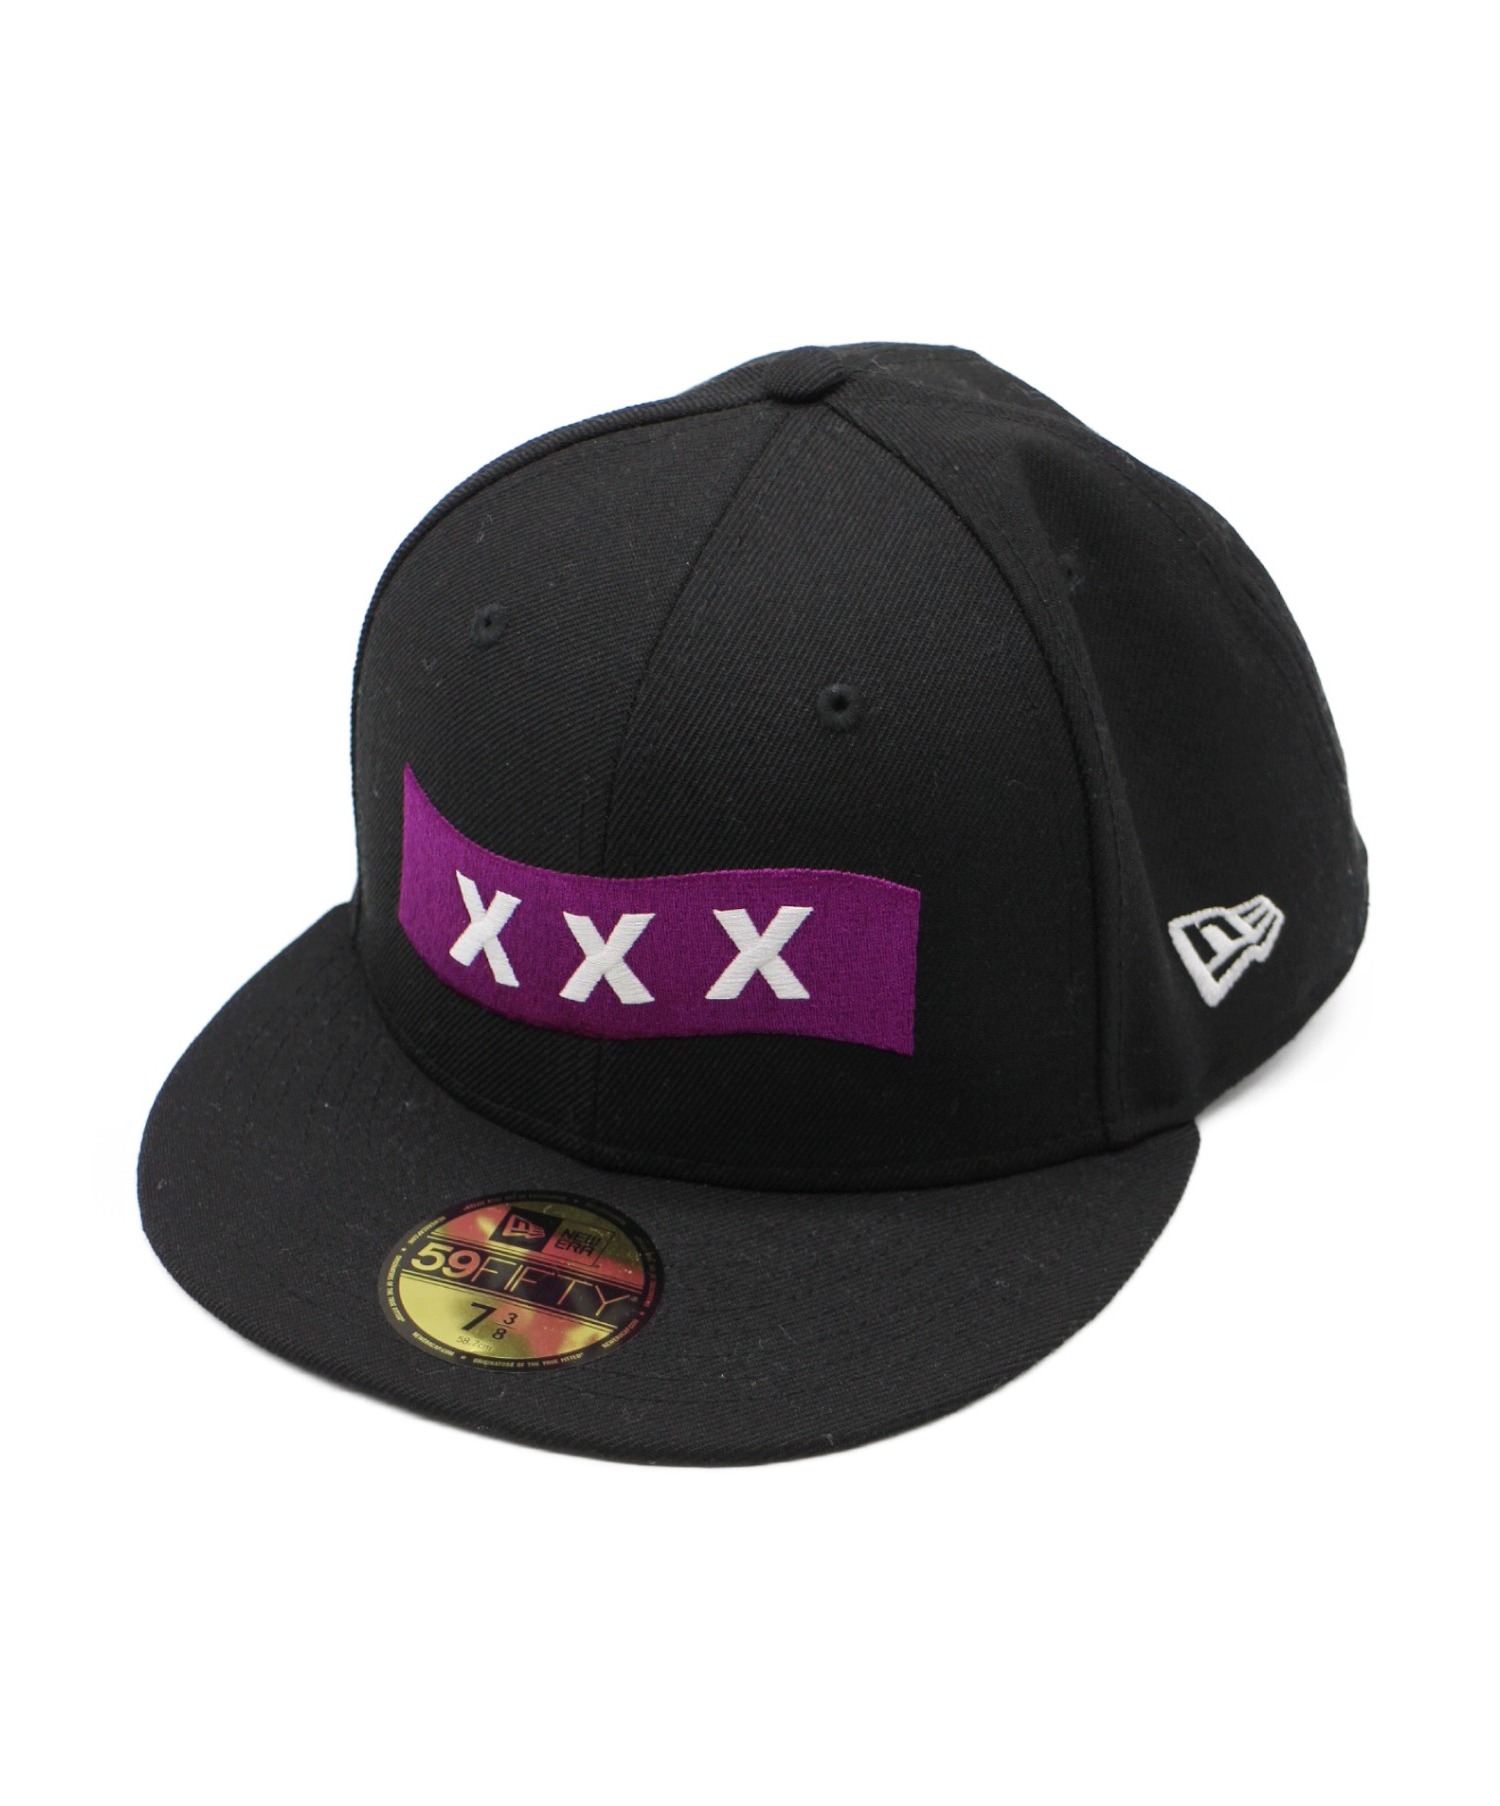 日本製新品 新品 GOD SELECTION XXX NEW ERA ニット帽 黒 ブラックの